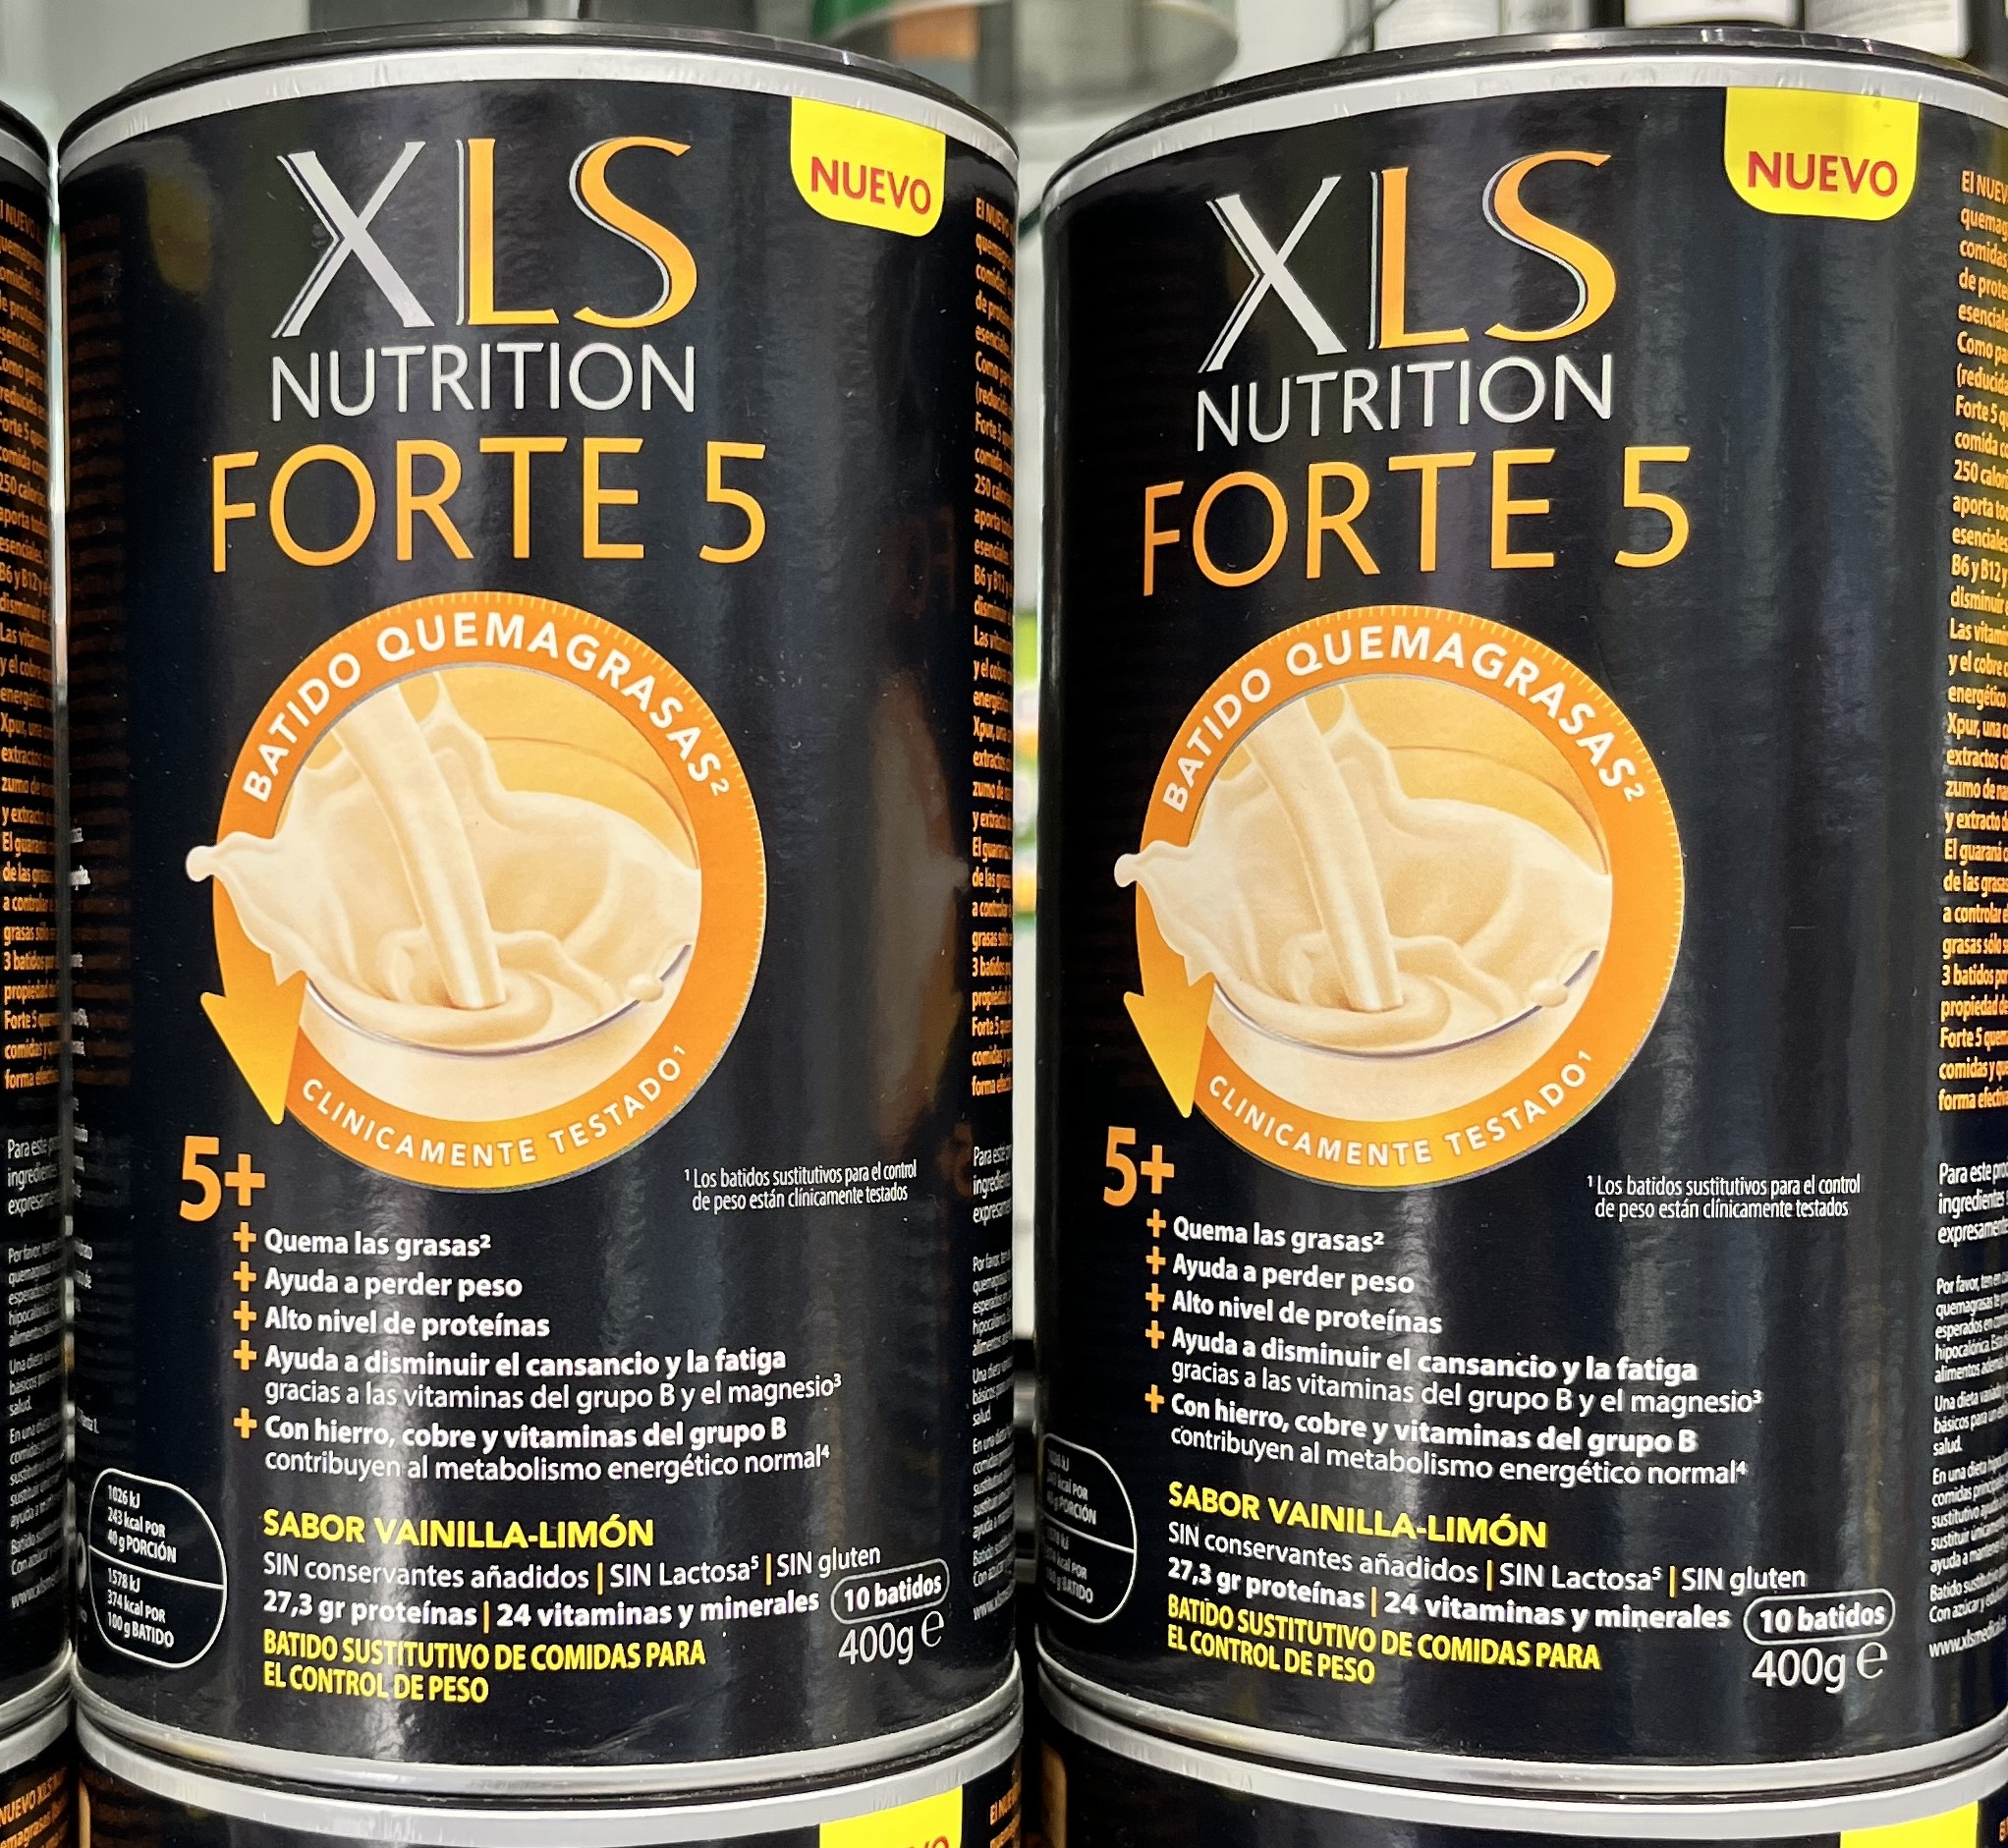 XLS Nutrition Forte 5 Batido Quemagrasas. AYUDA A PERDER PESO 5. QUEMA GRASAS 2. ALTO NIVEL DE PROTEÍNAS. Ayuda a disminuir el cansancio y la fatiga gracias a las vitaminas del grupo B y el magnesio.